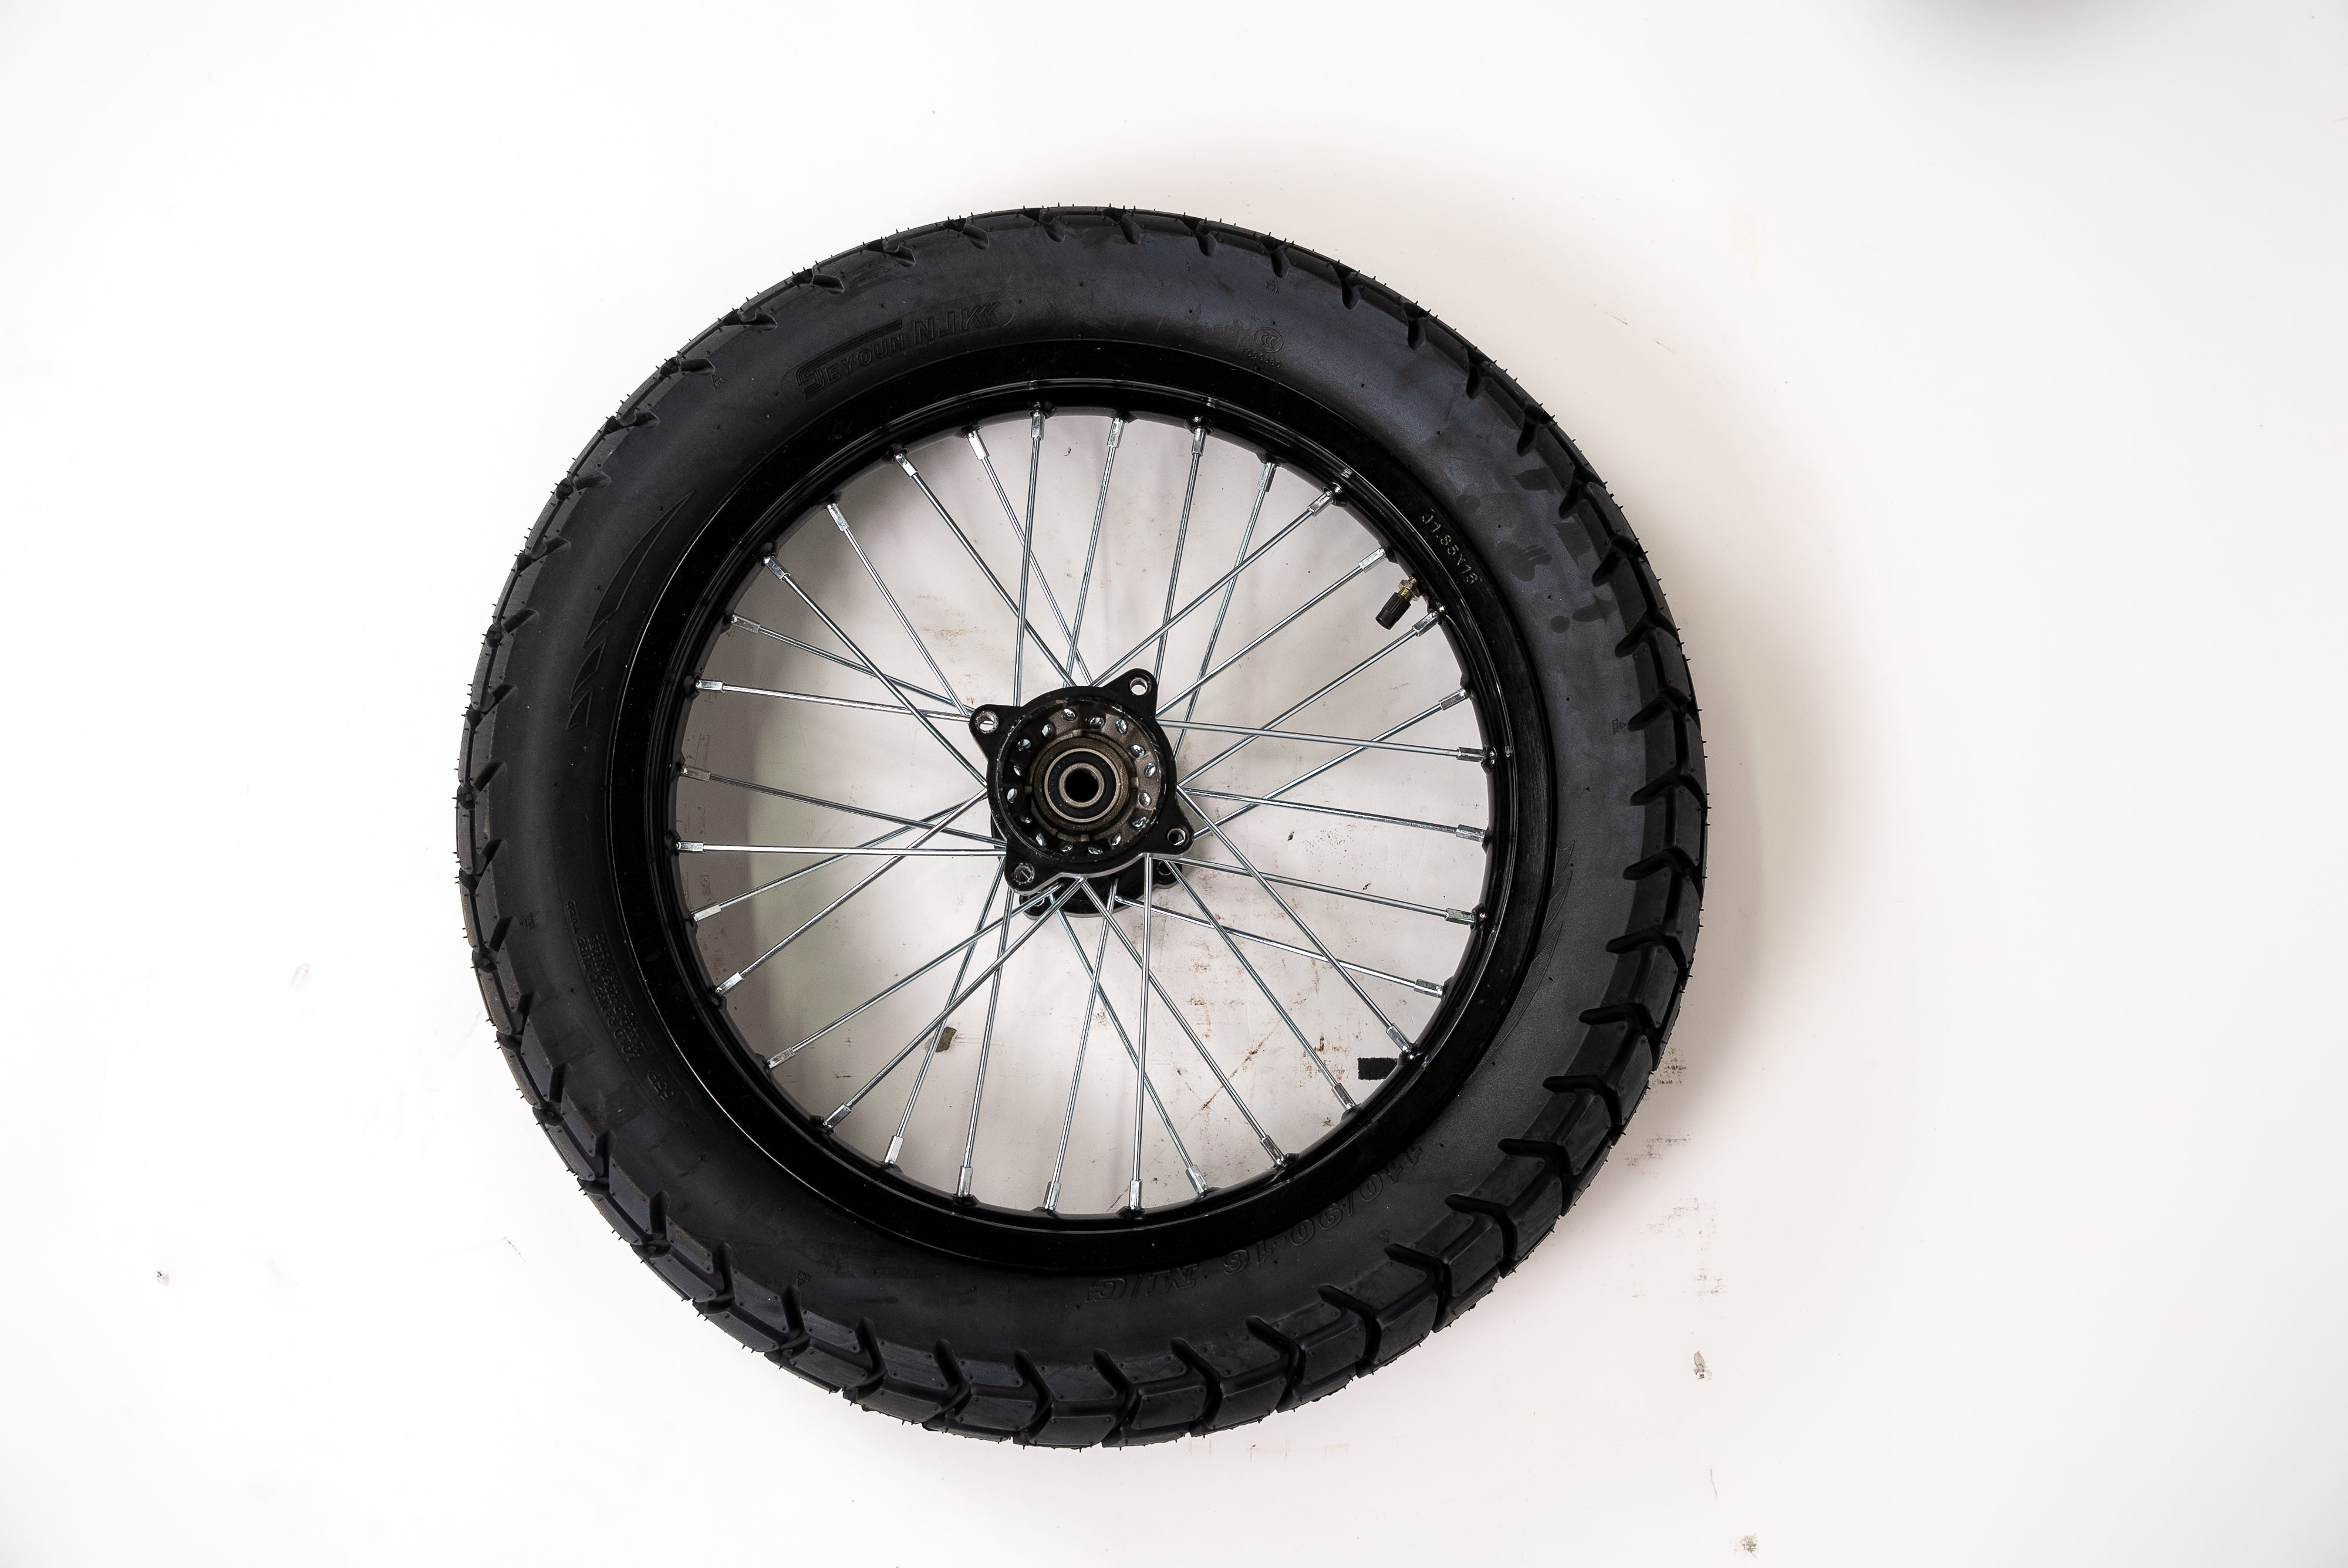 Xion Bike 16 inch rear wheel